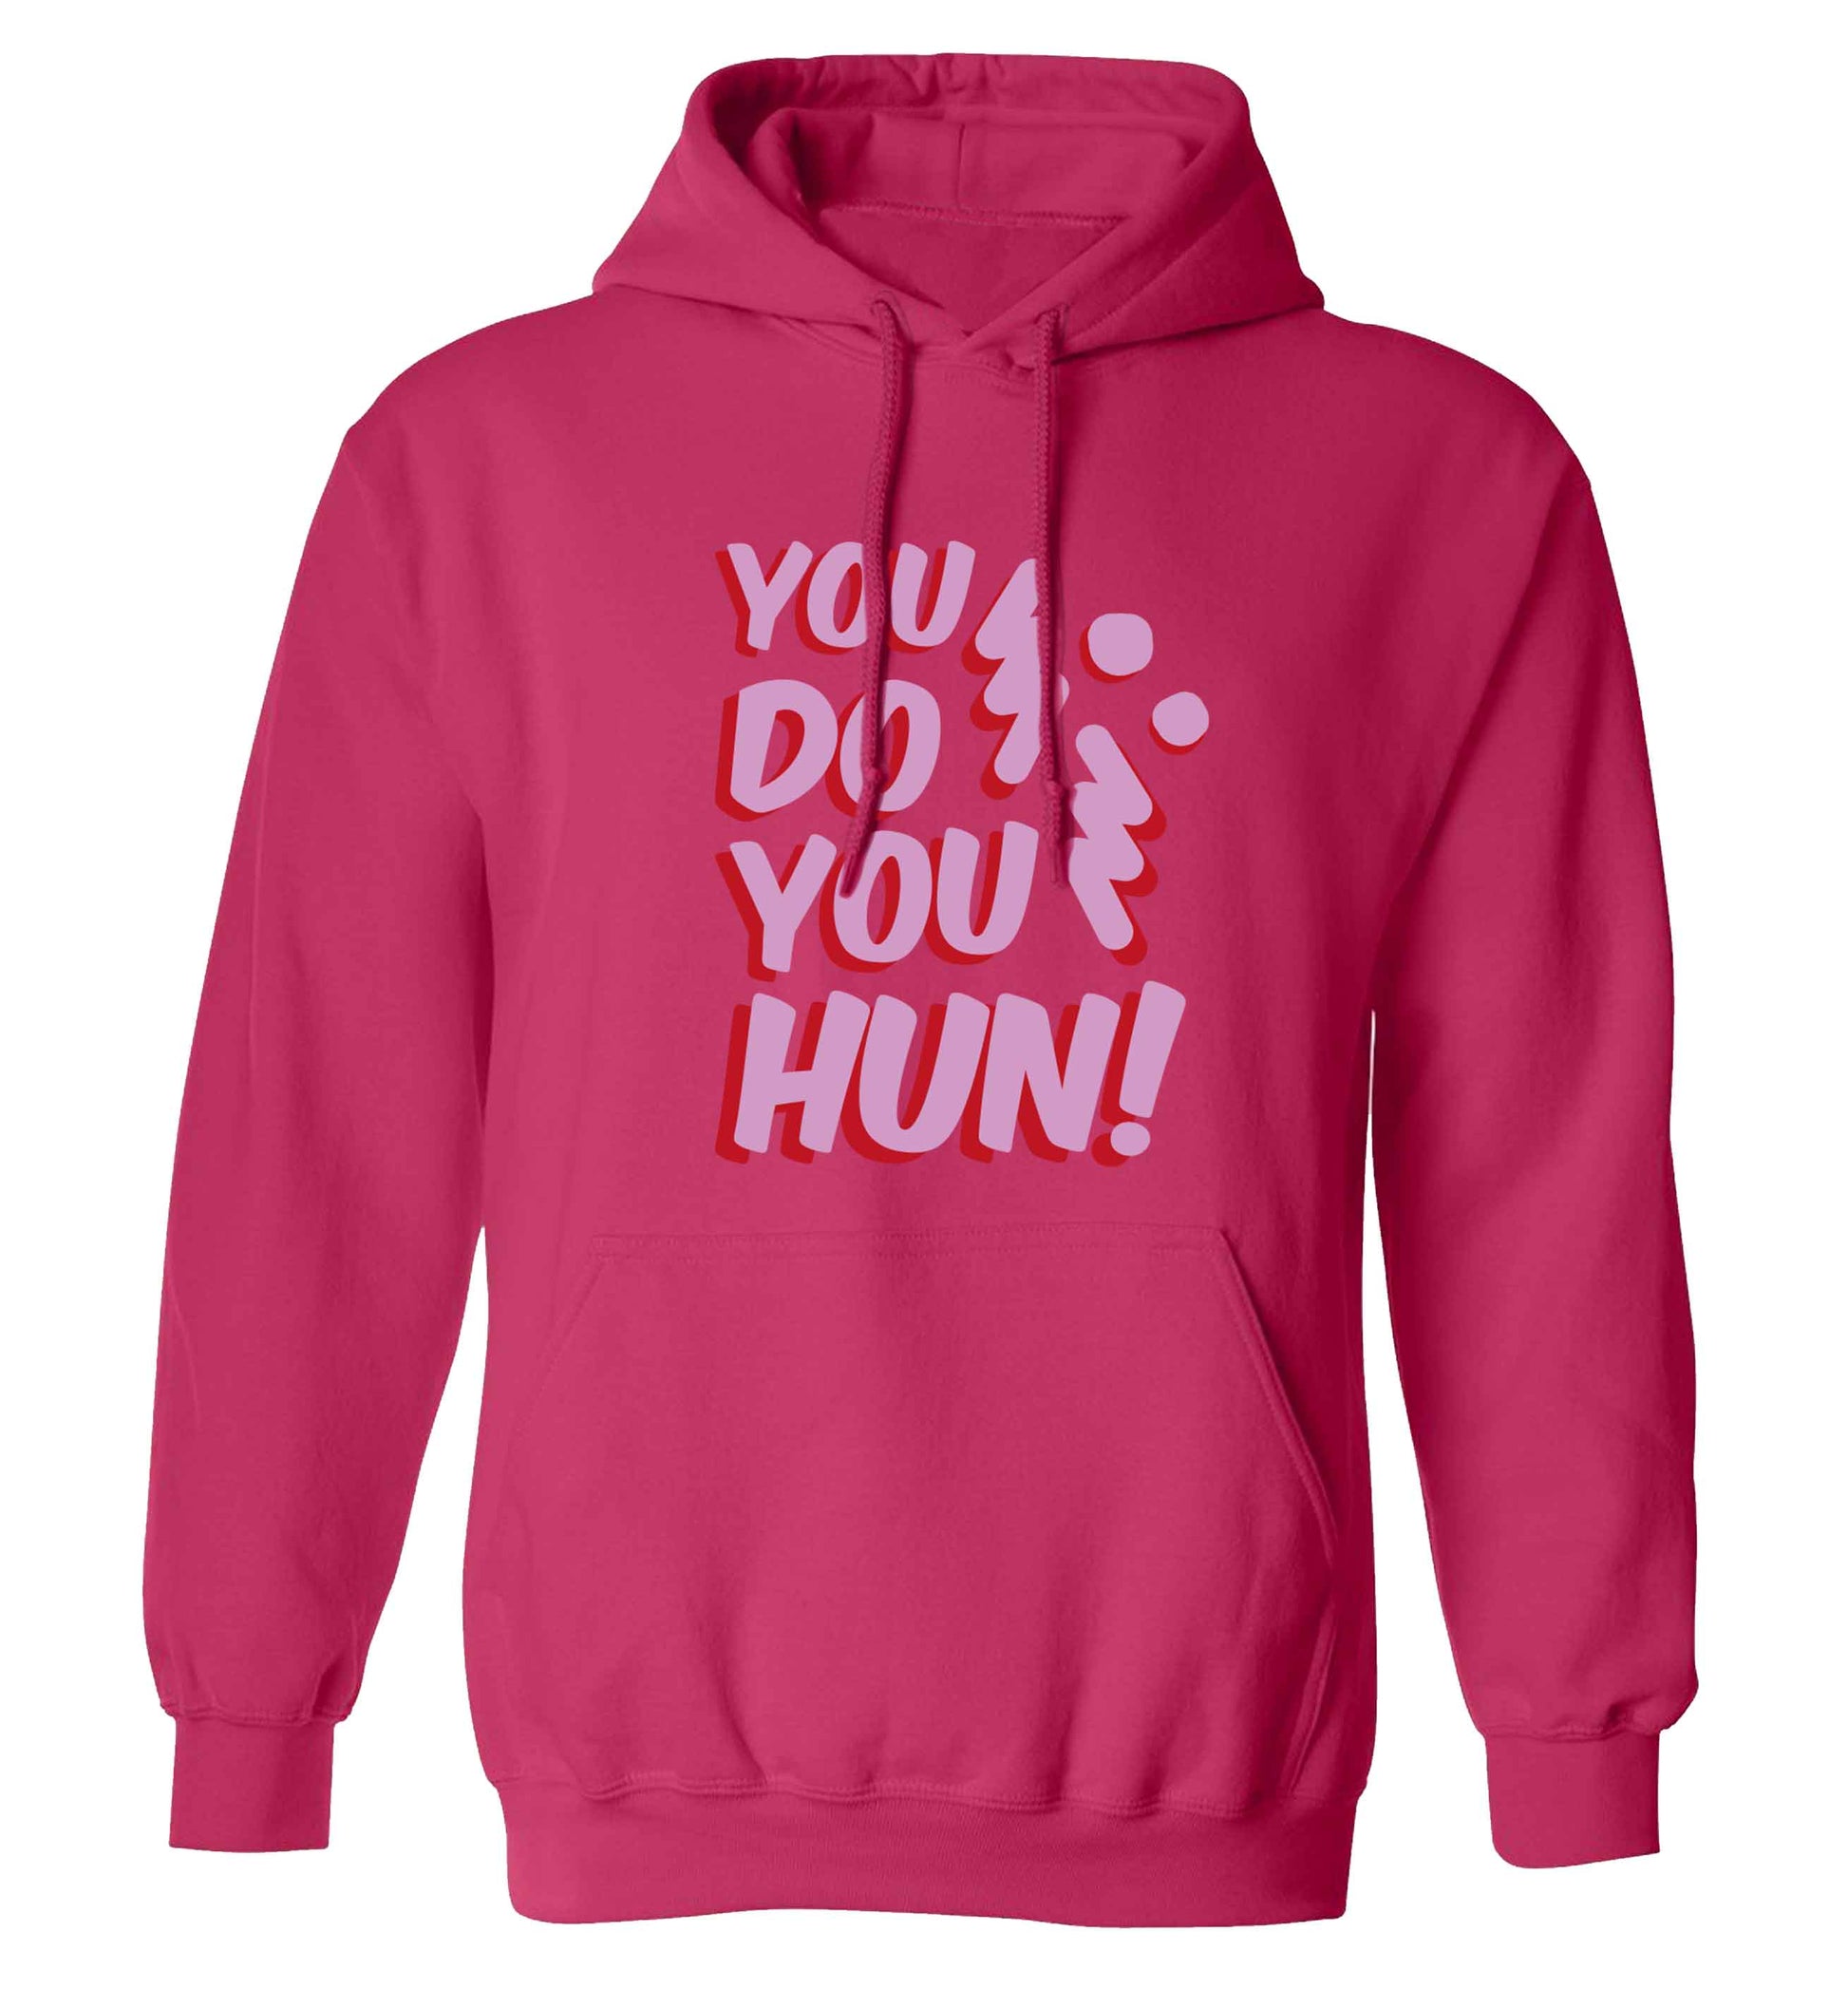 You do you hun adults unisex pink hoodie 2XL